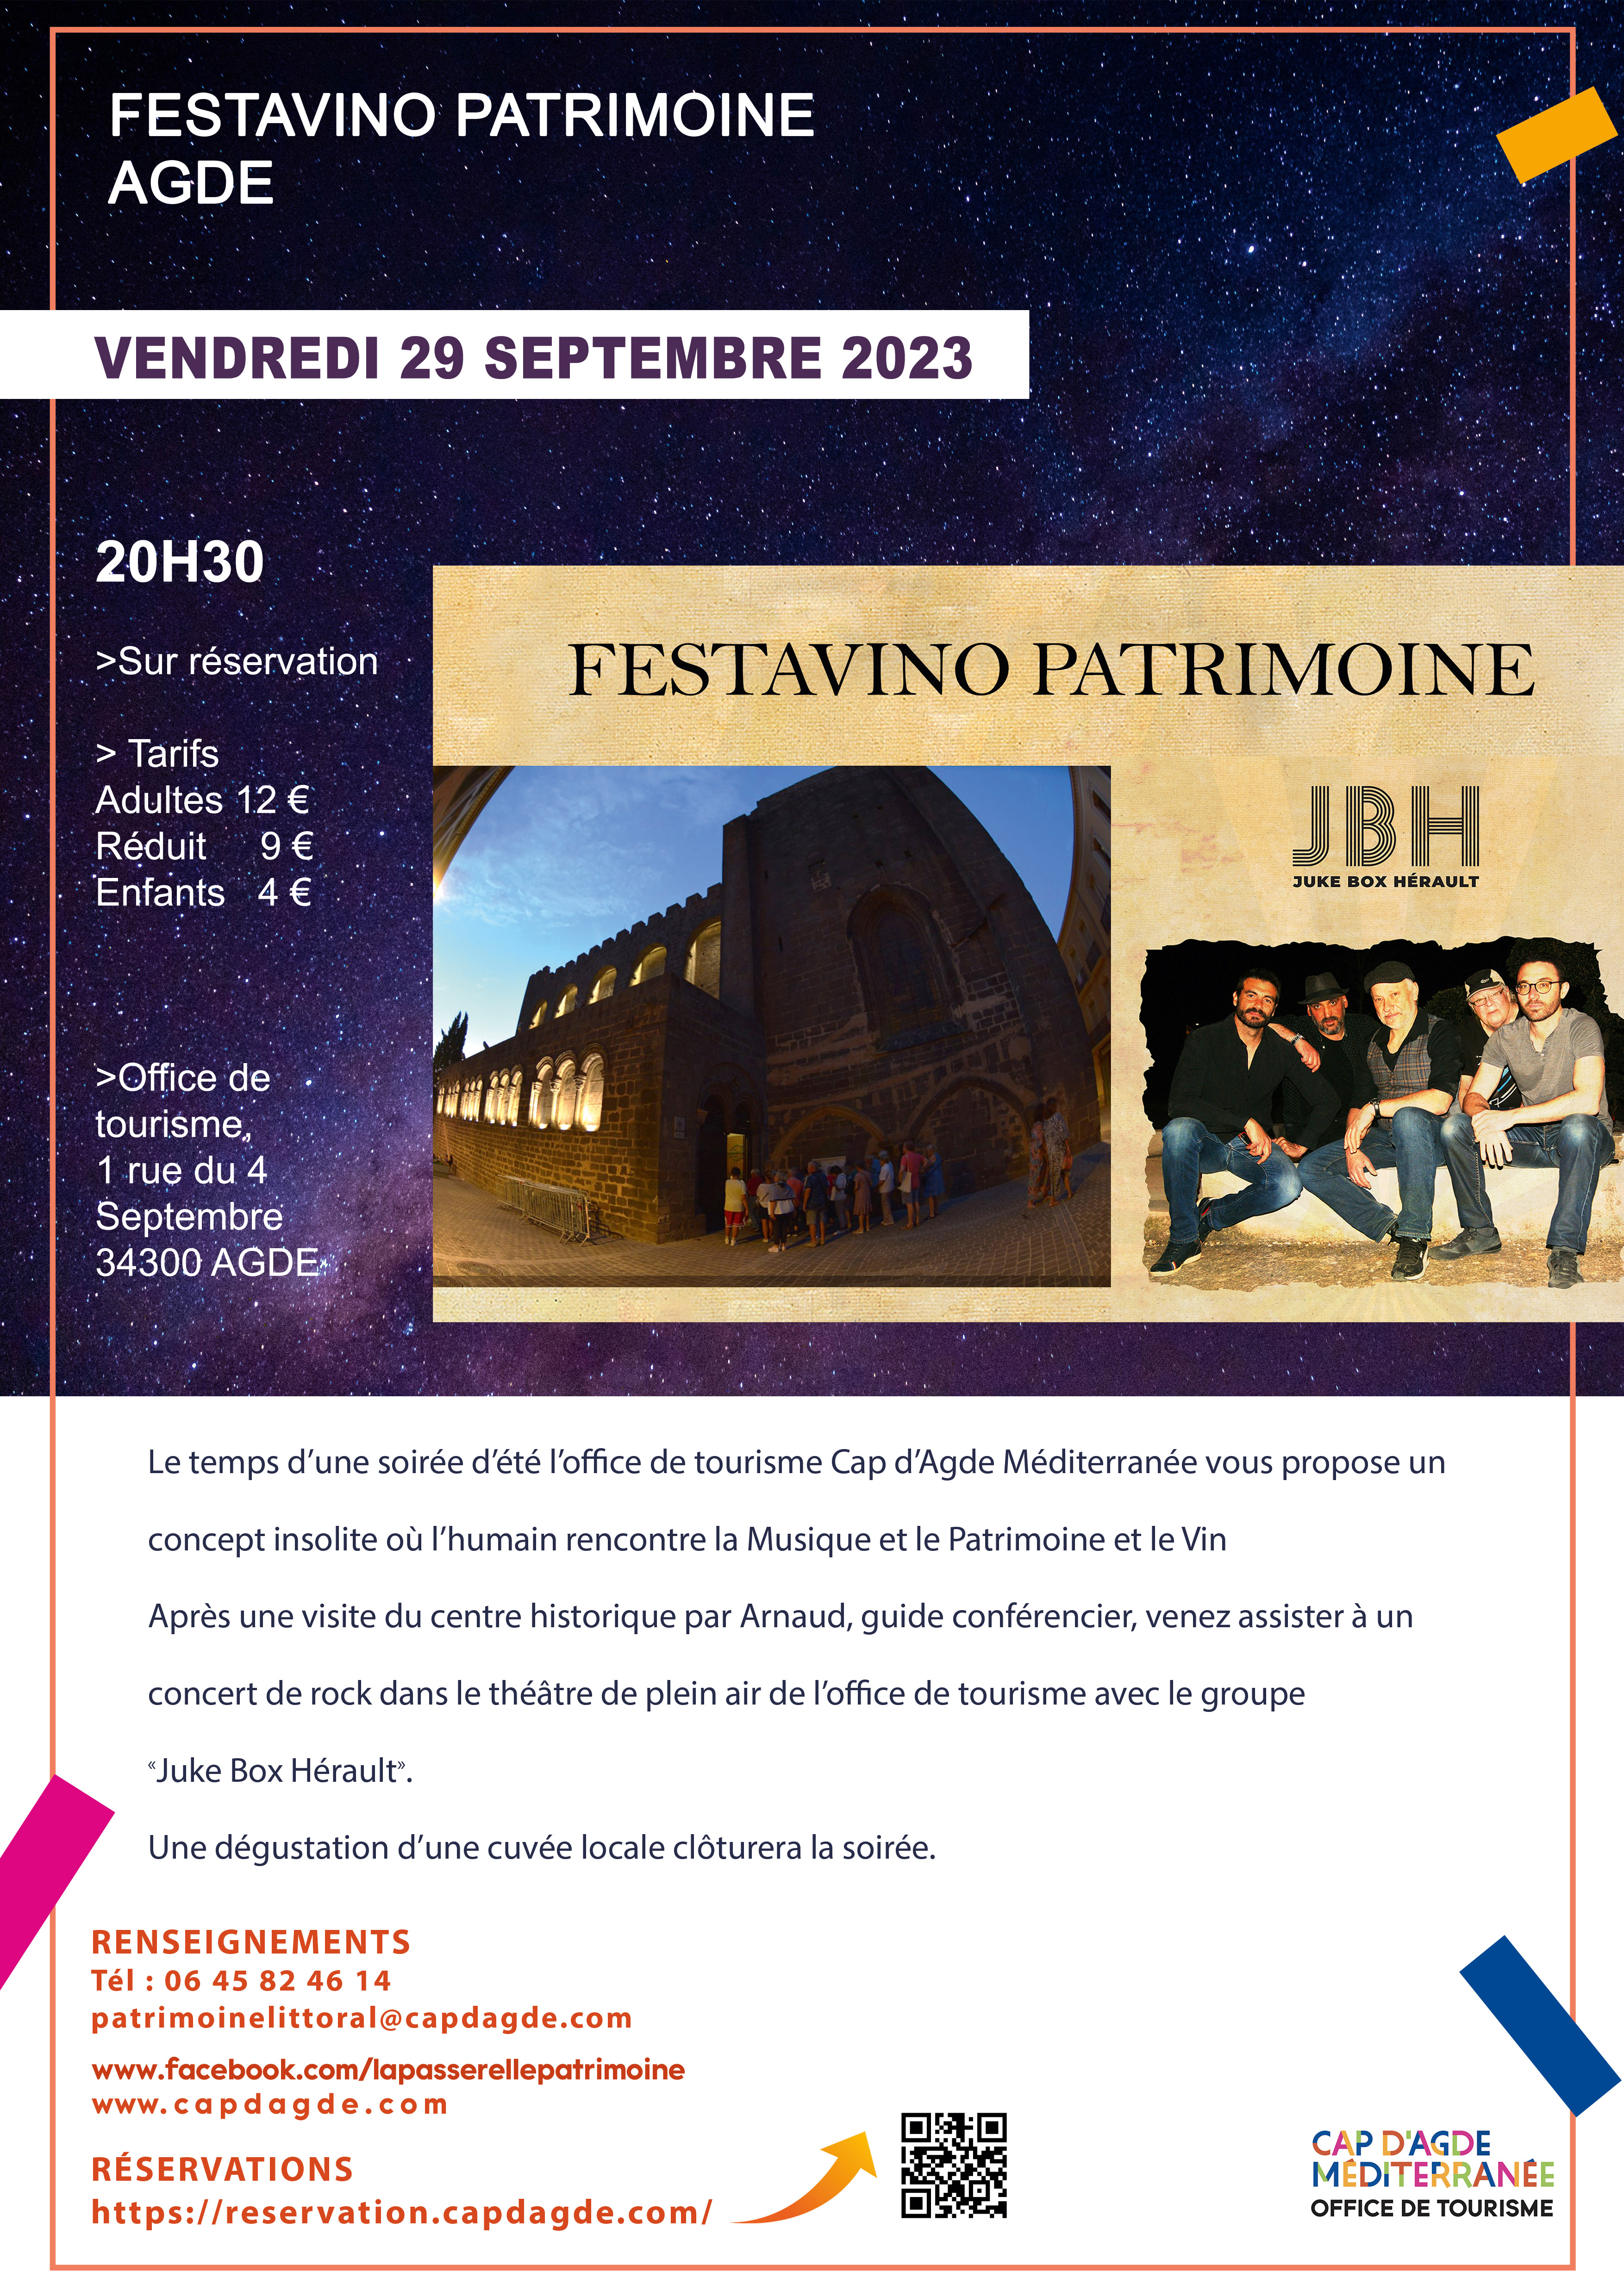 Agde - Festavino Patrimoine du 29 septembre à Agde : réservez vite !